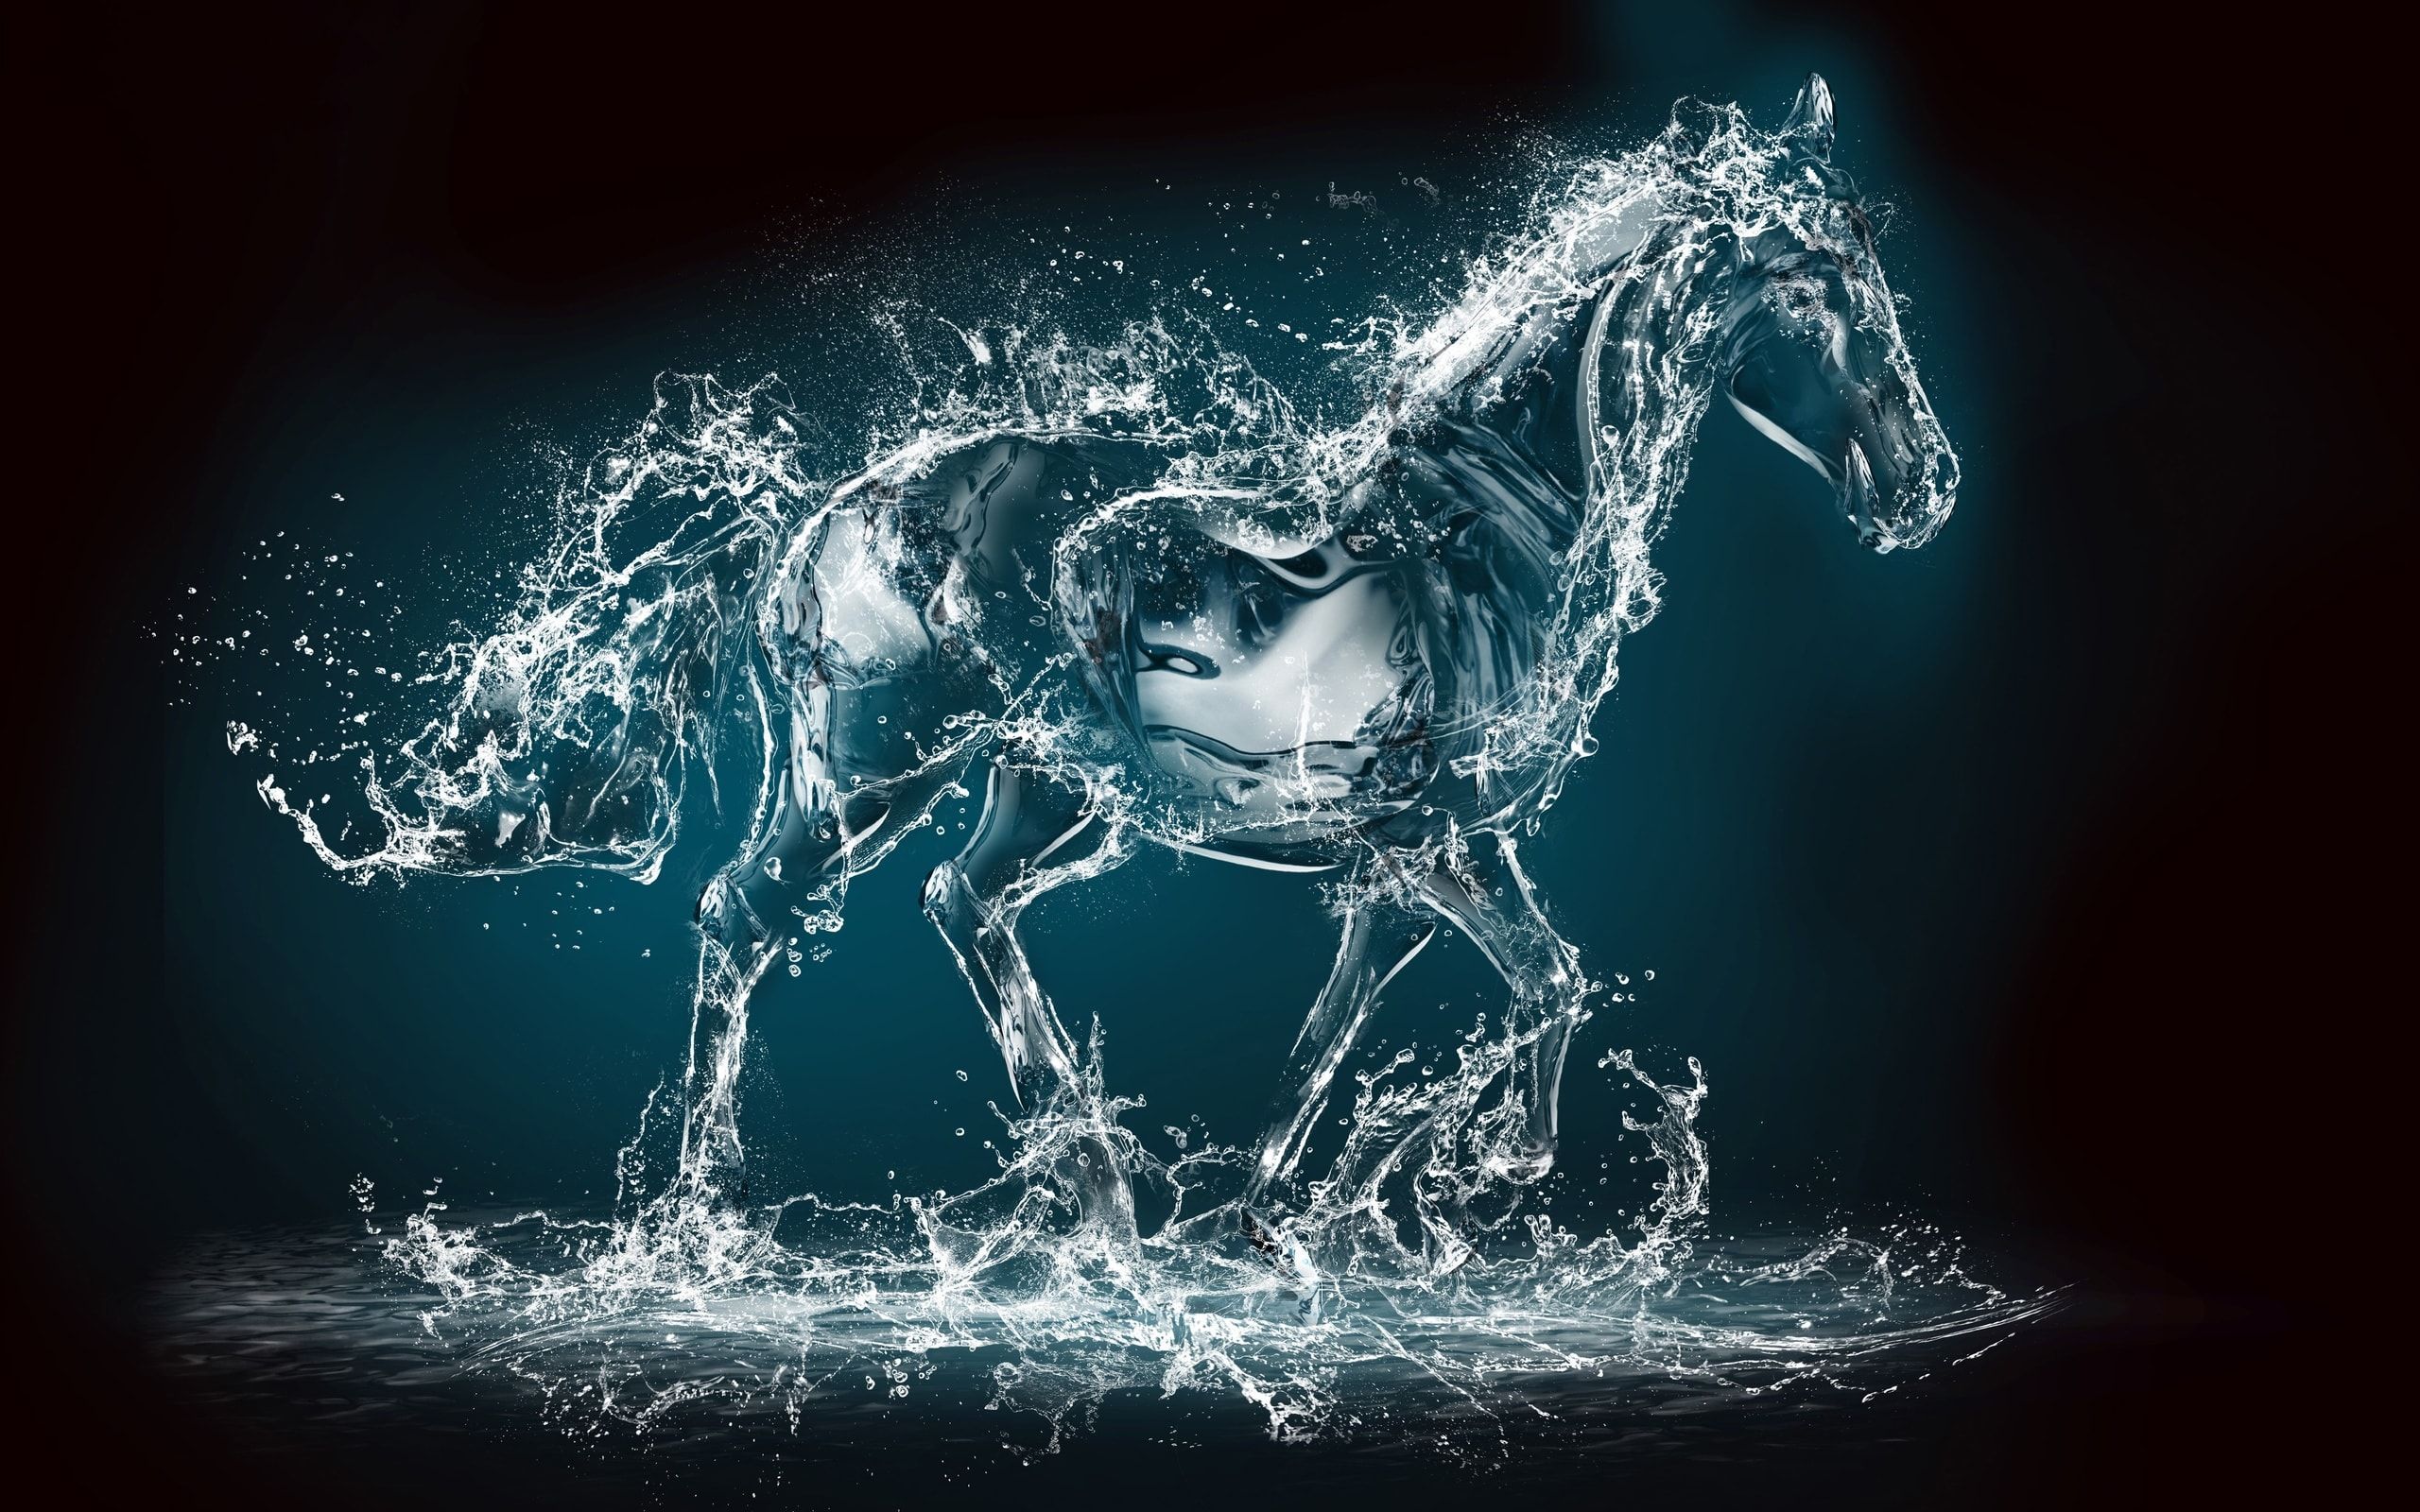 desktophdwallpaper.org. Water art, Horse wallpaper, Art wallpaper